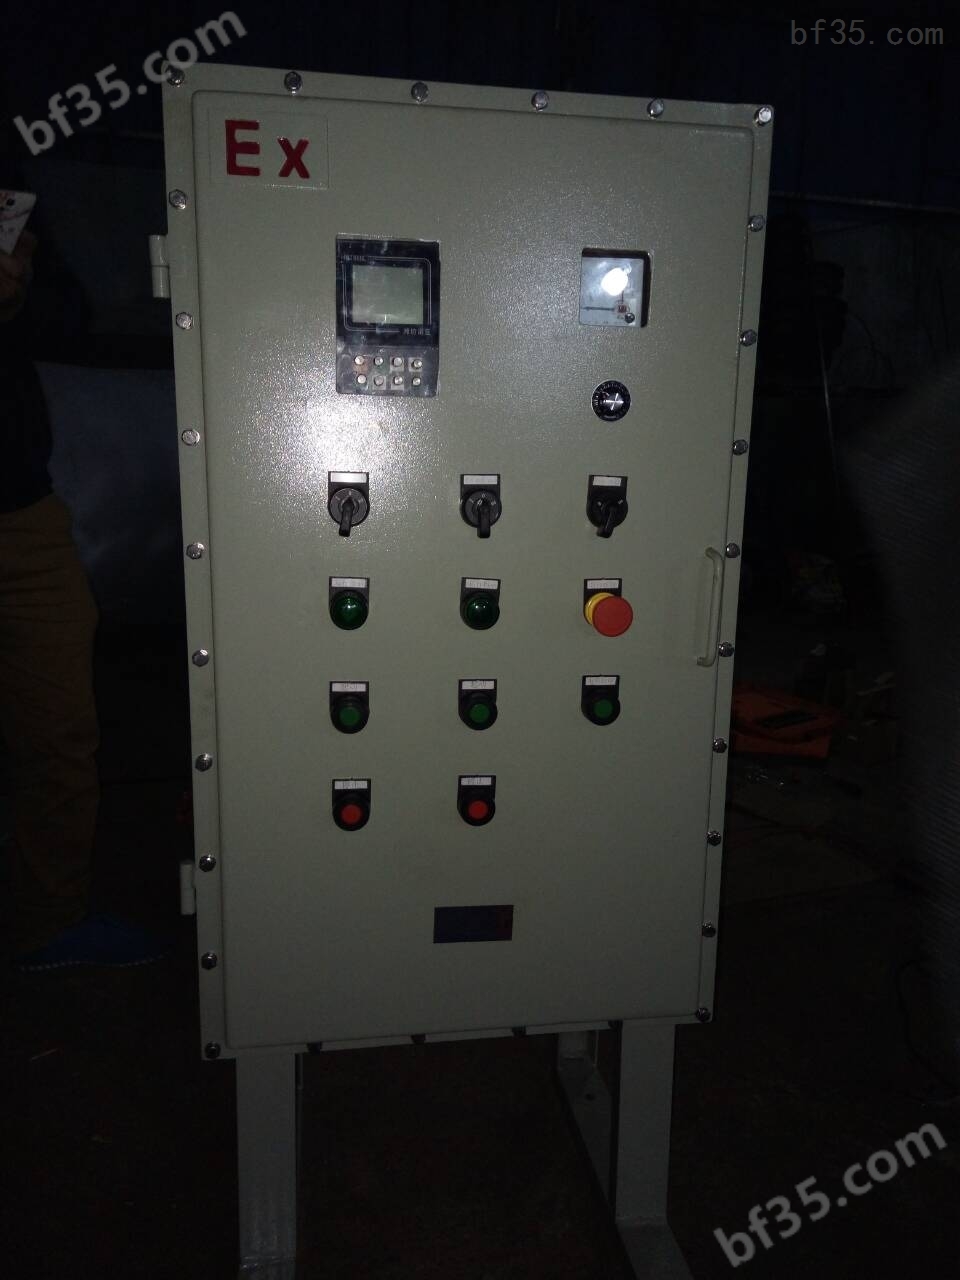 钢板焊接防爆电器控制柜